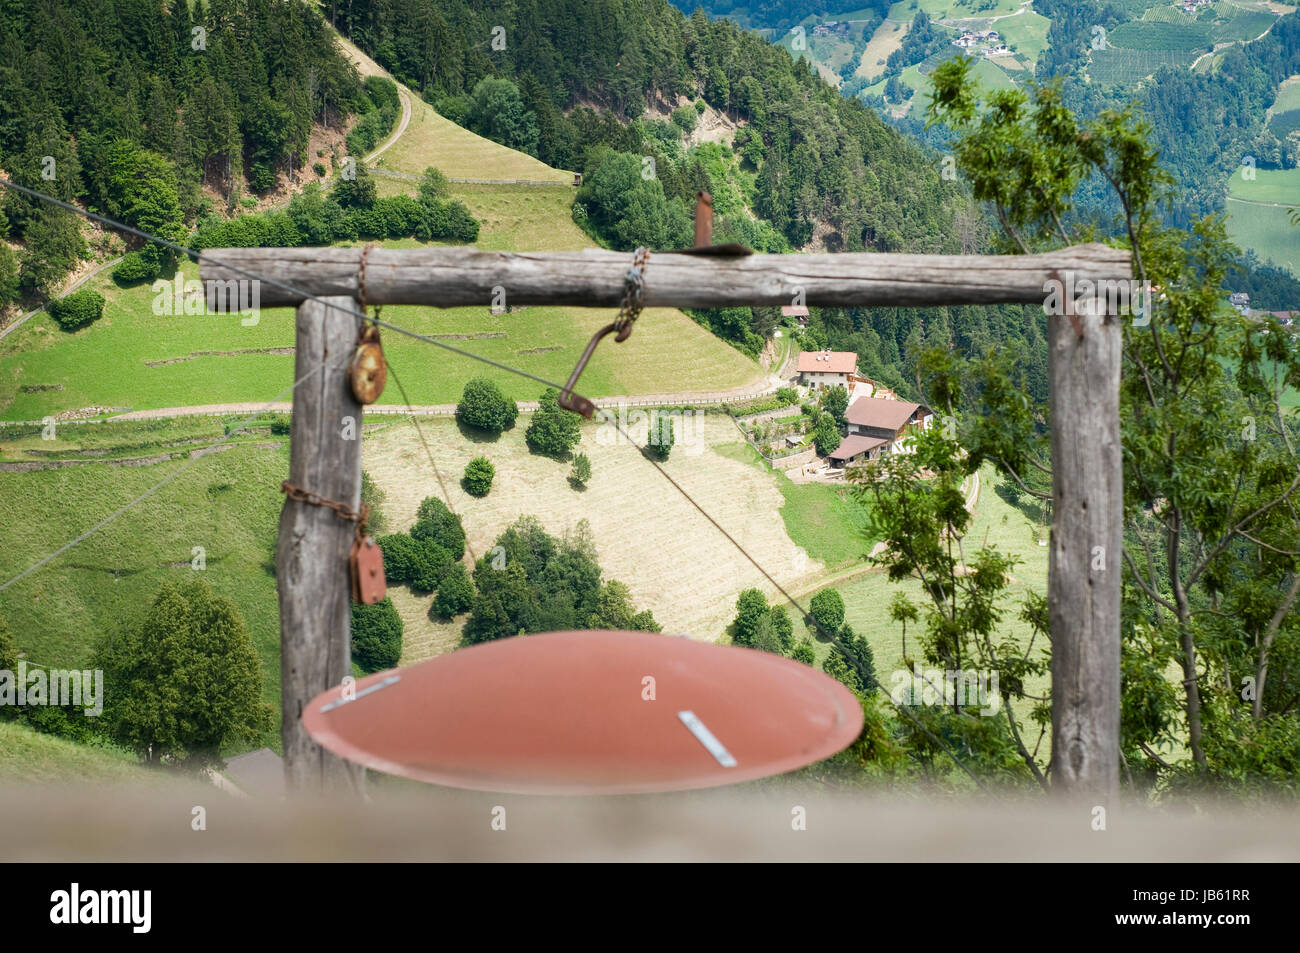 Landschaftsaufnahme in Südtirol oberhalb der a monte Bergstation muta: Blick durch ein hölzernes Holzgestell einer bergbäuerlichen Lasten-Seilbahn auf einen Steilhang mit hinaufführender Straße Foto Stock